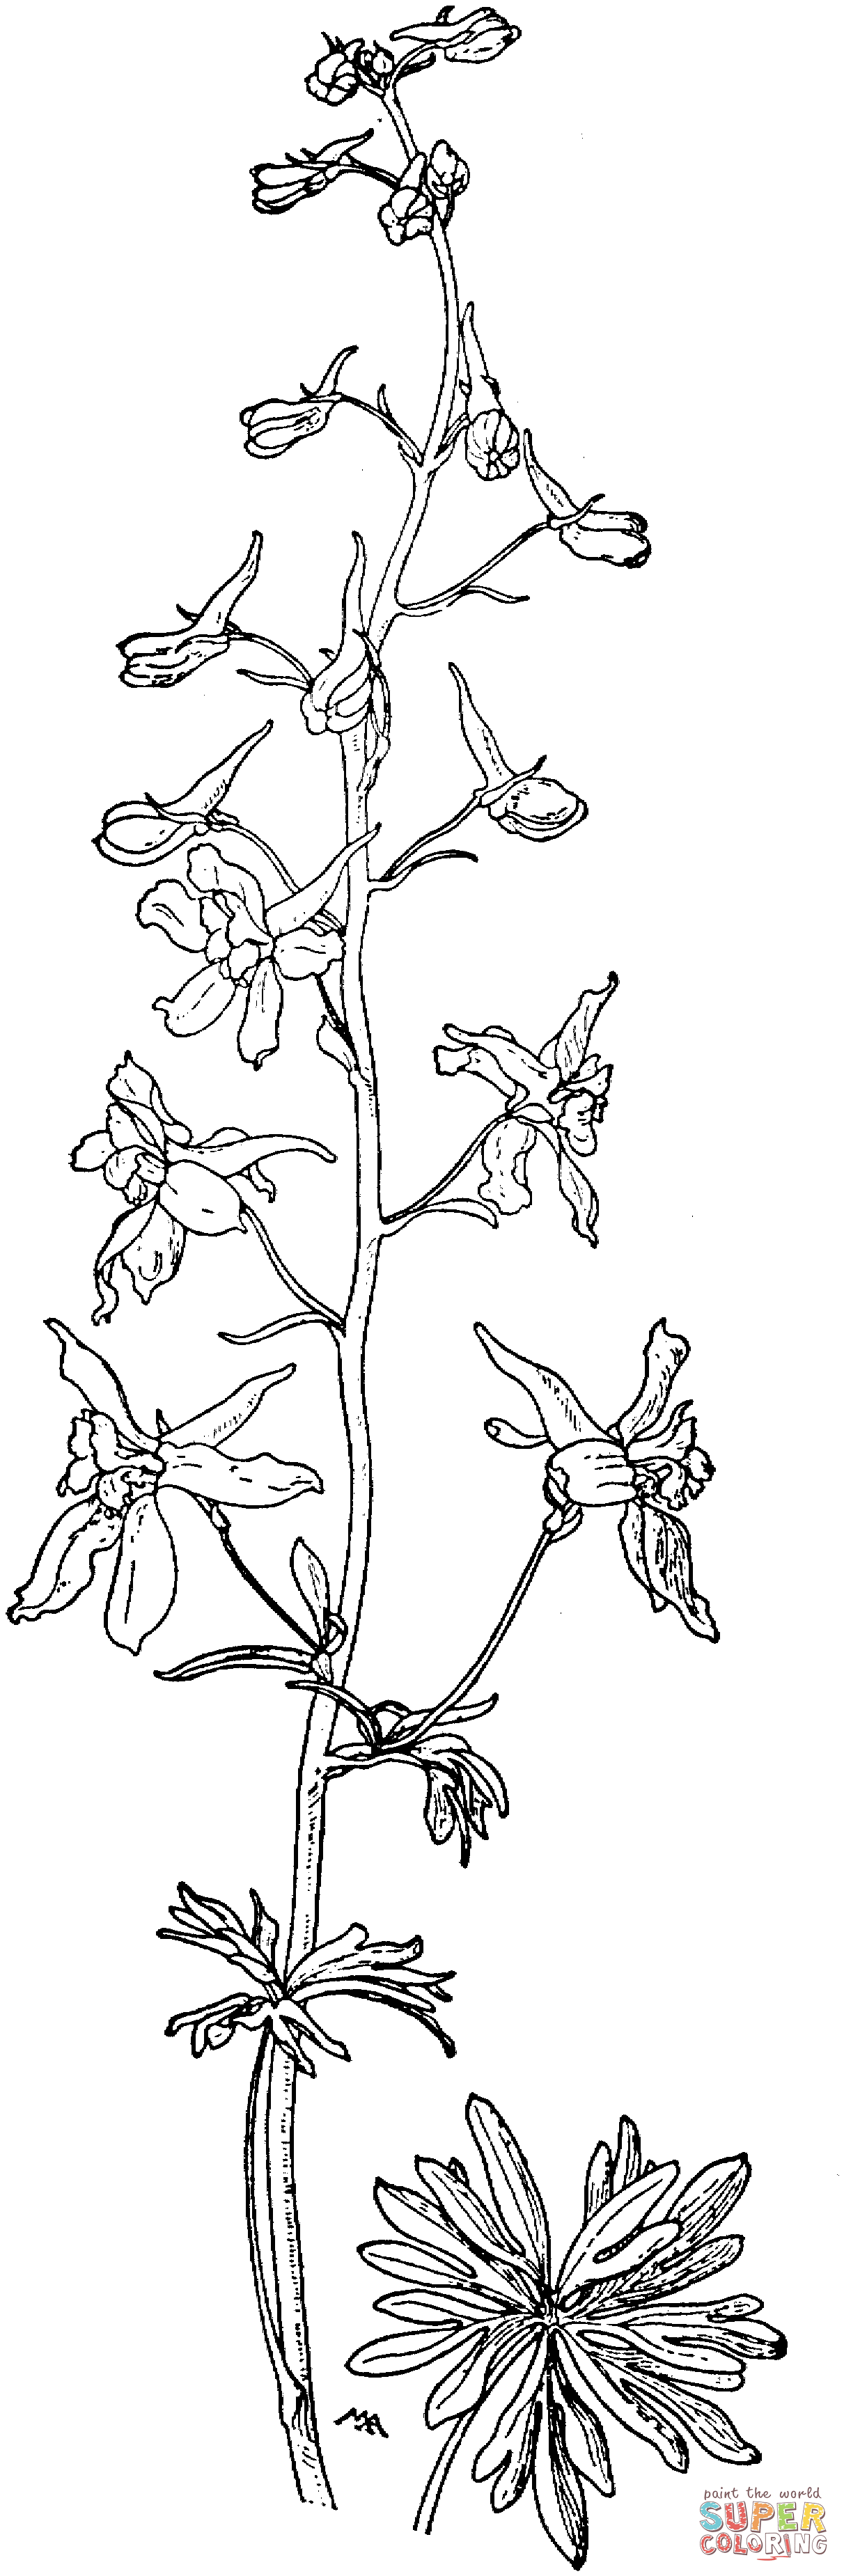 Delphinium Bicolor of Kleine Ridderspoor of Lage Ridderspoor uit Ridderspoor